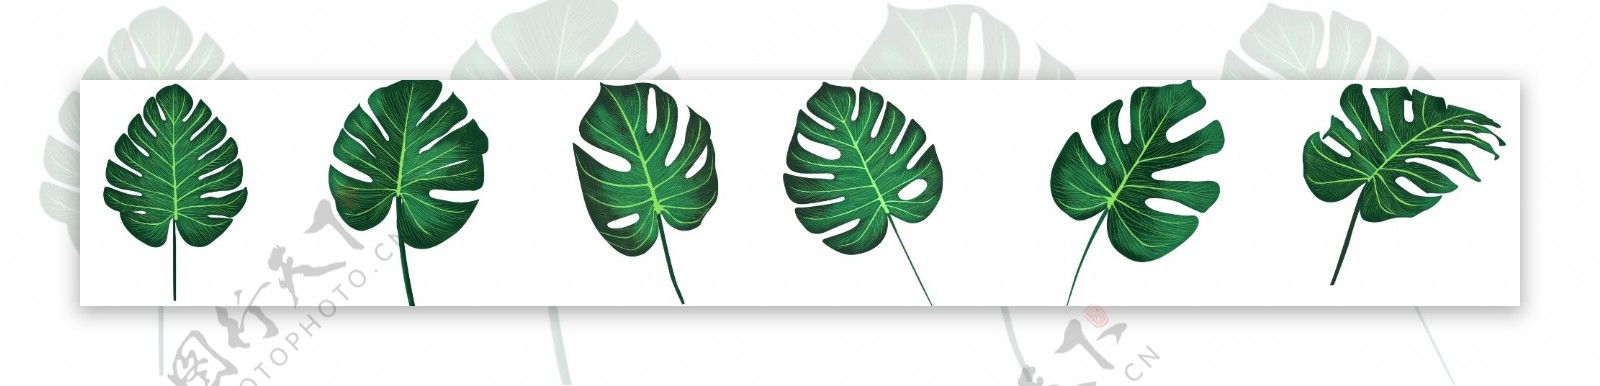 手绘噪点绿叶元素龟背竹叶子装饰